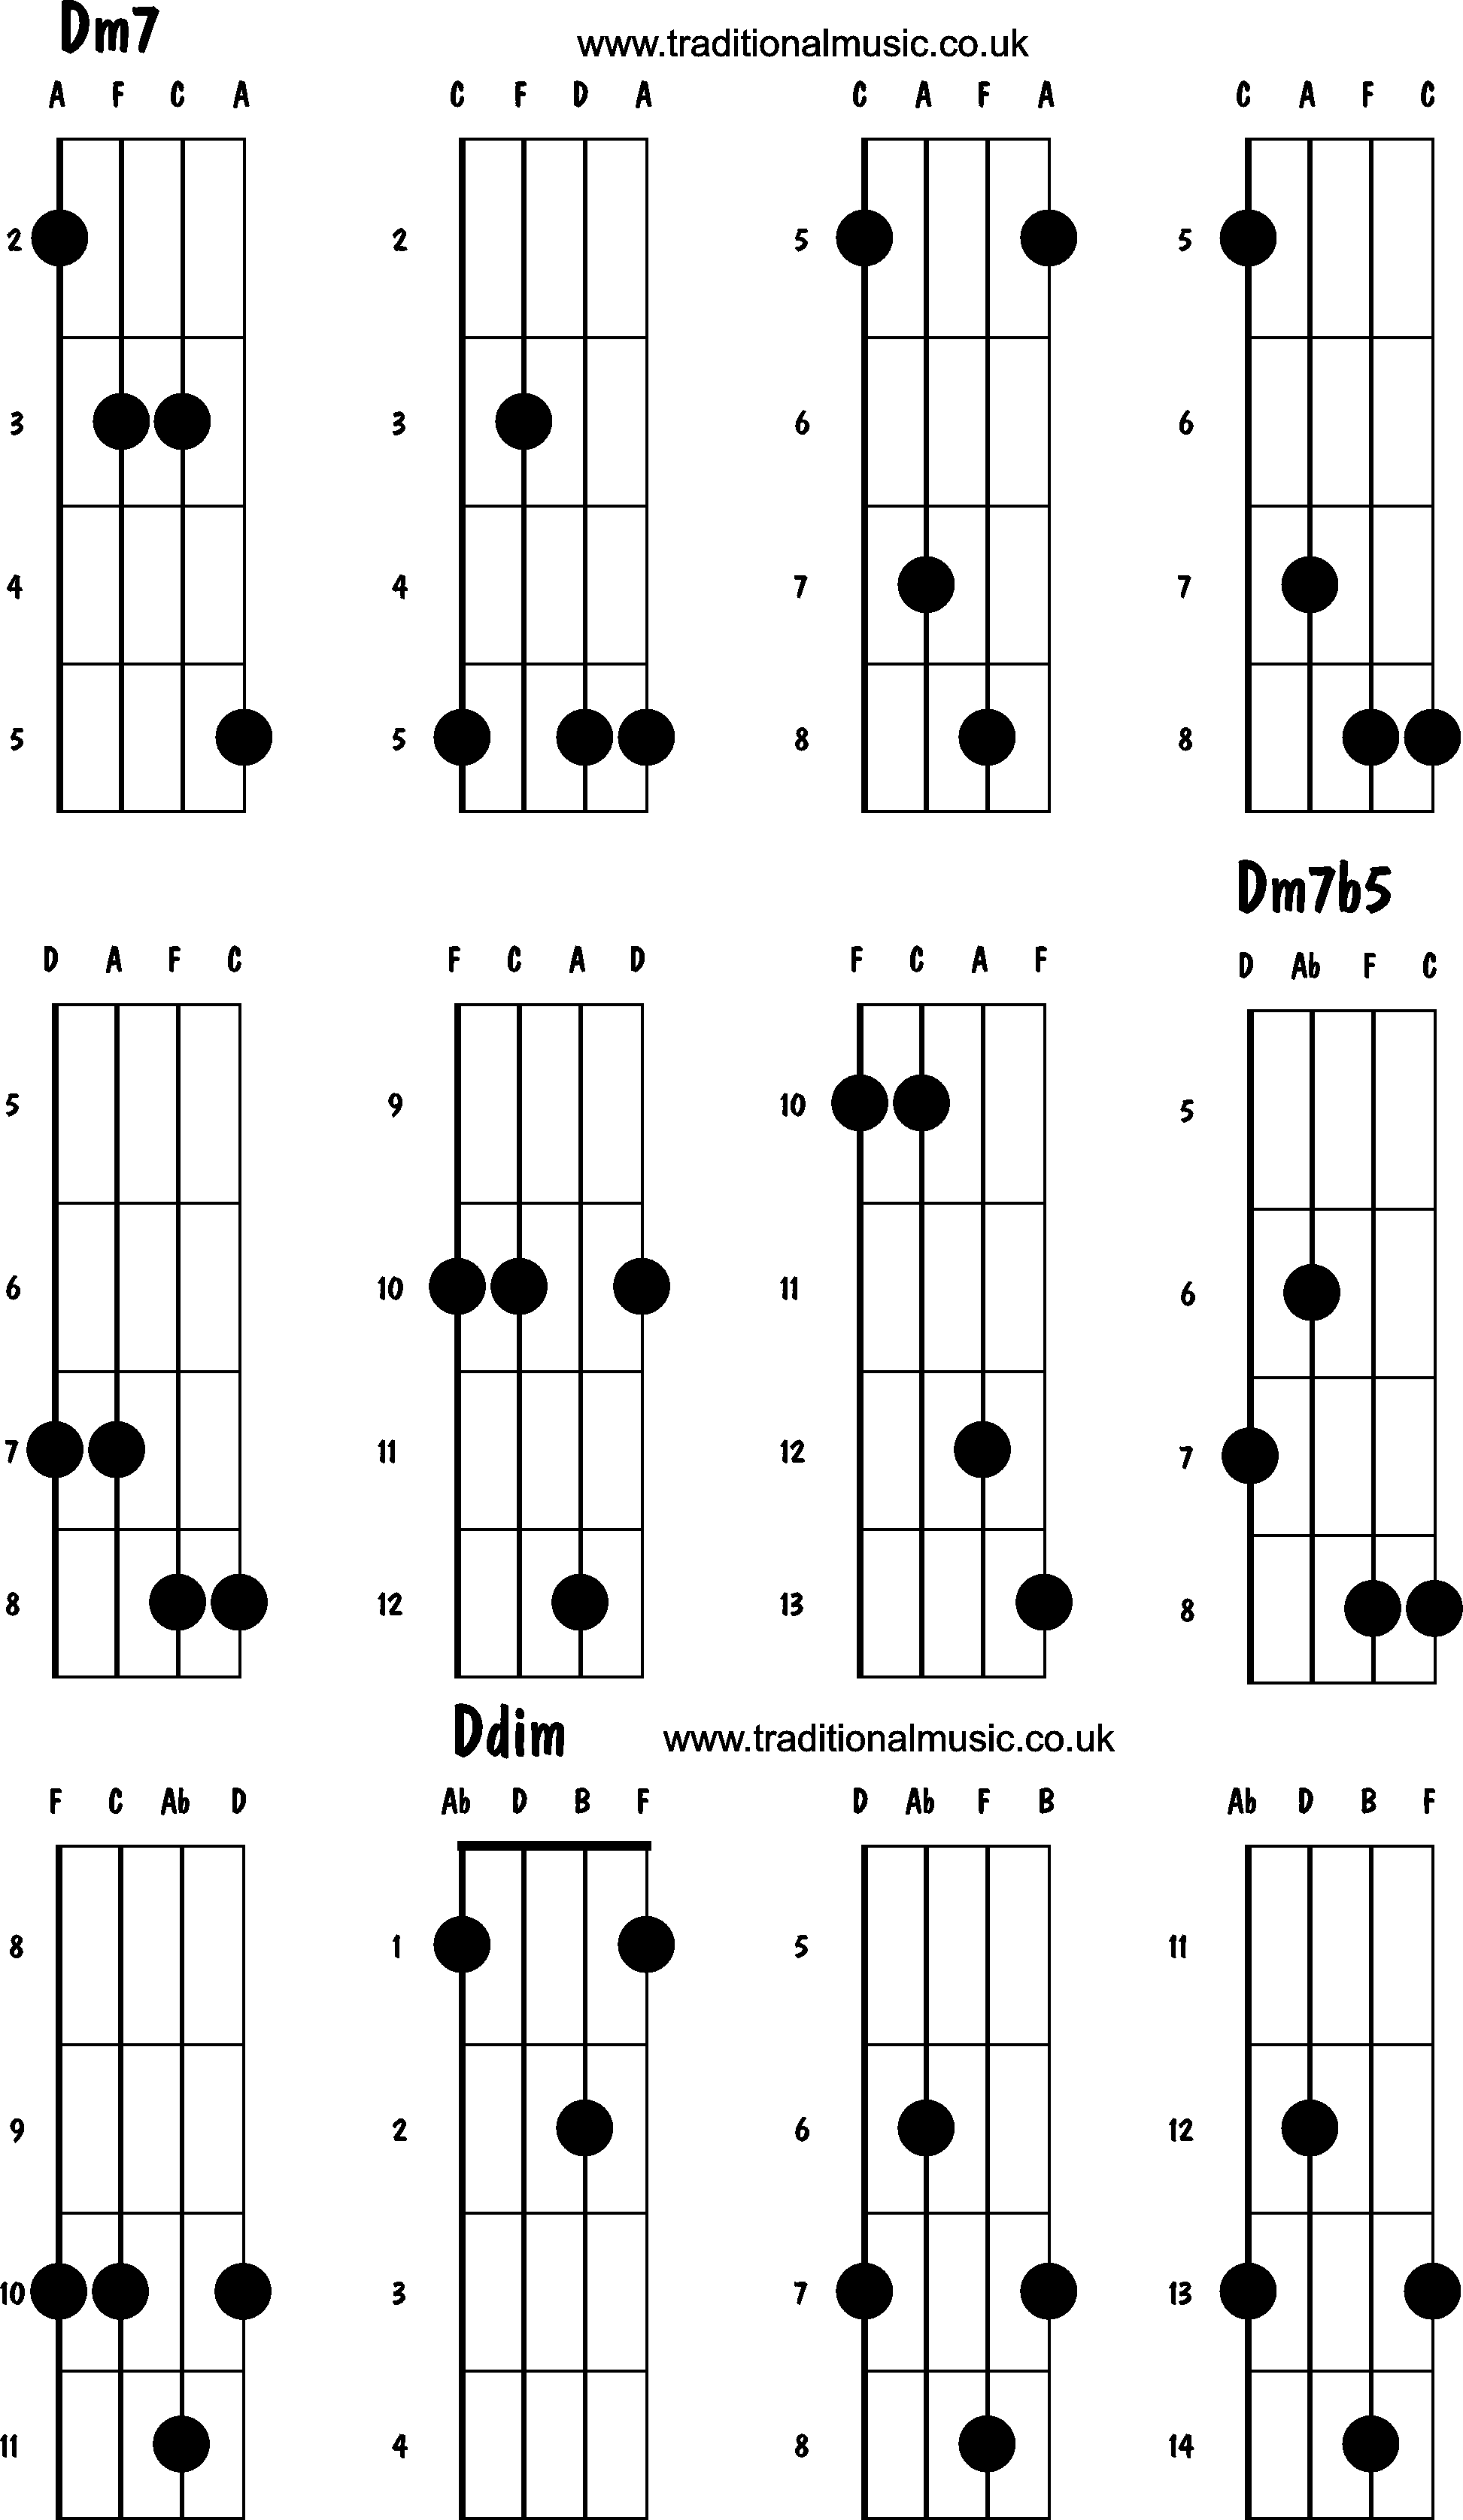 Advanced mandolin chords: Dm7, Dm7b5, Ddim